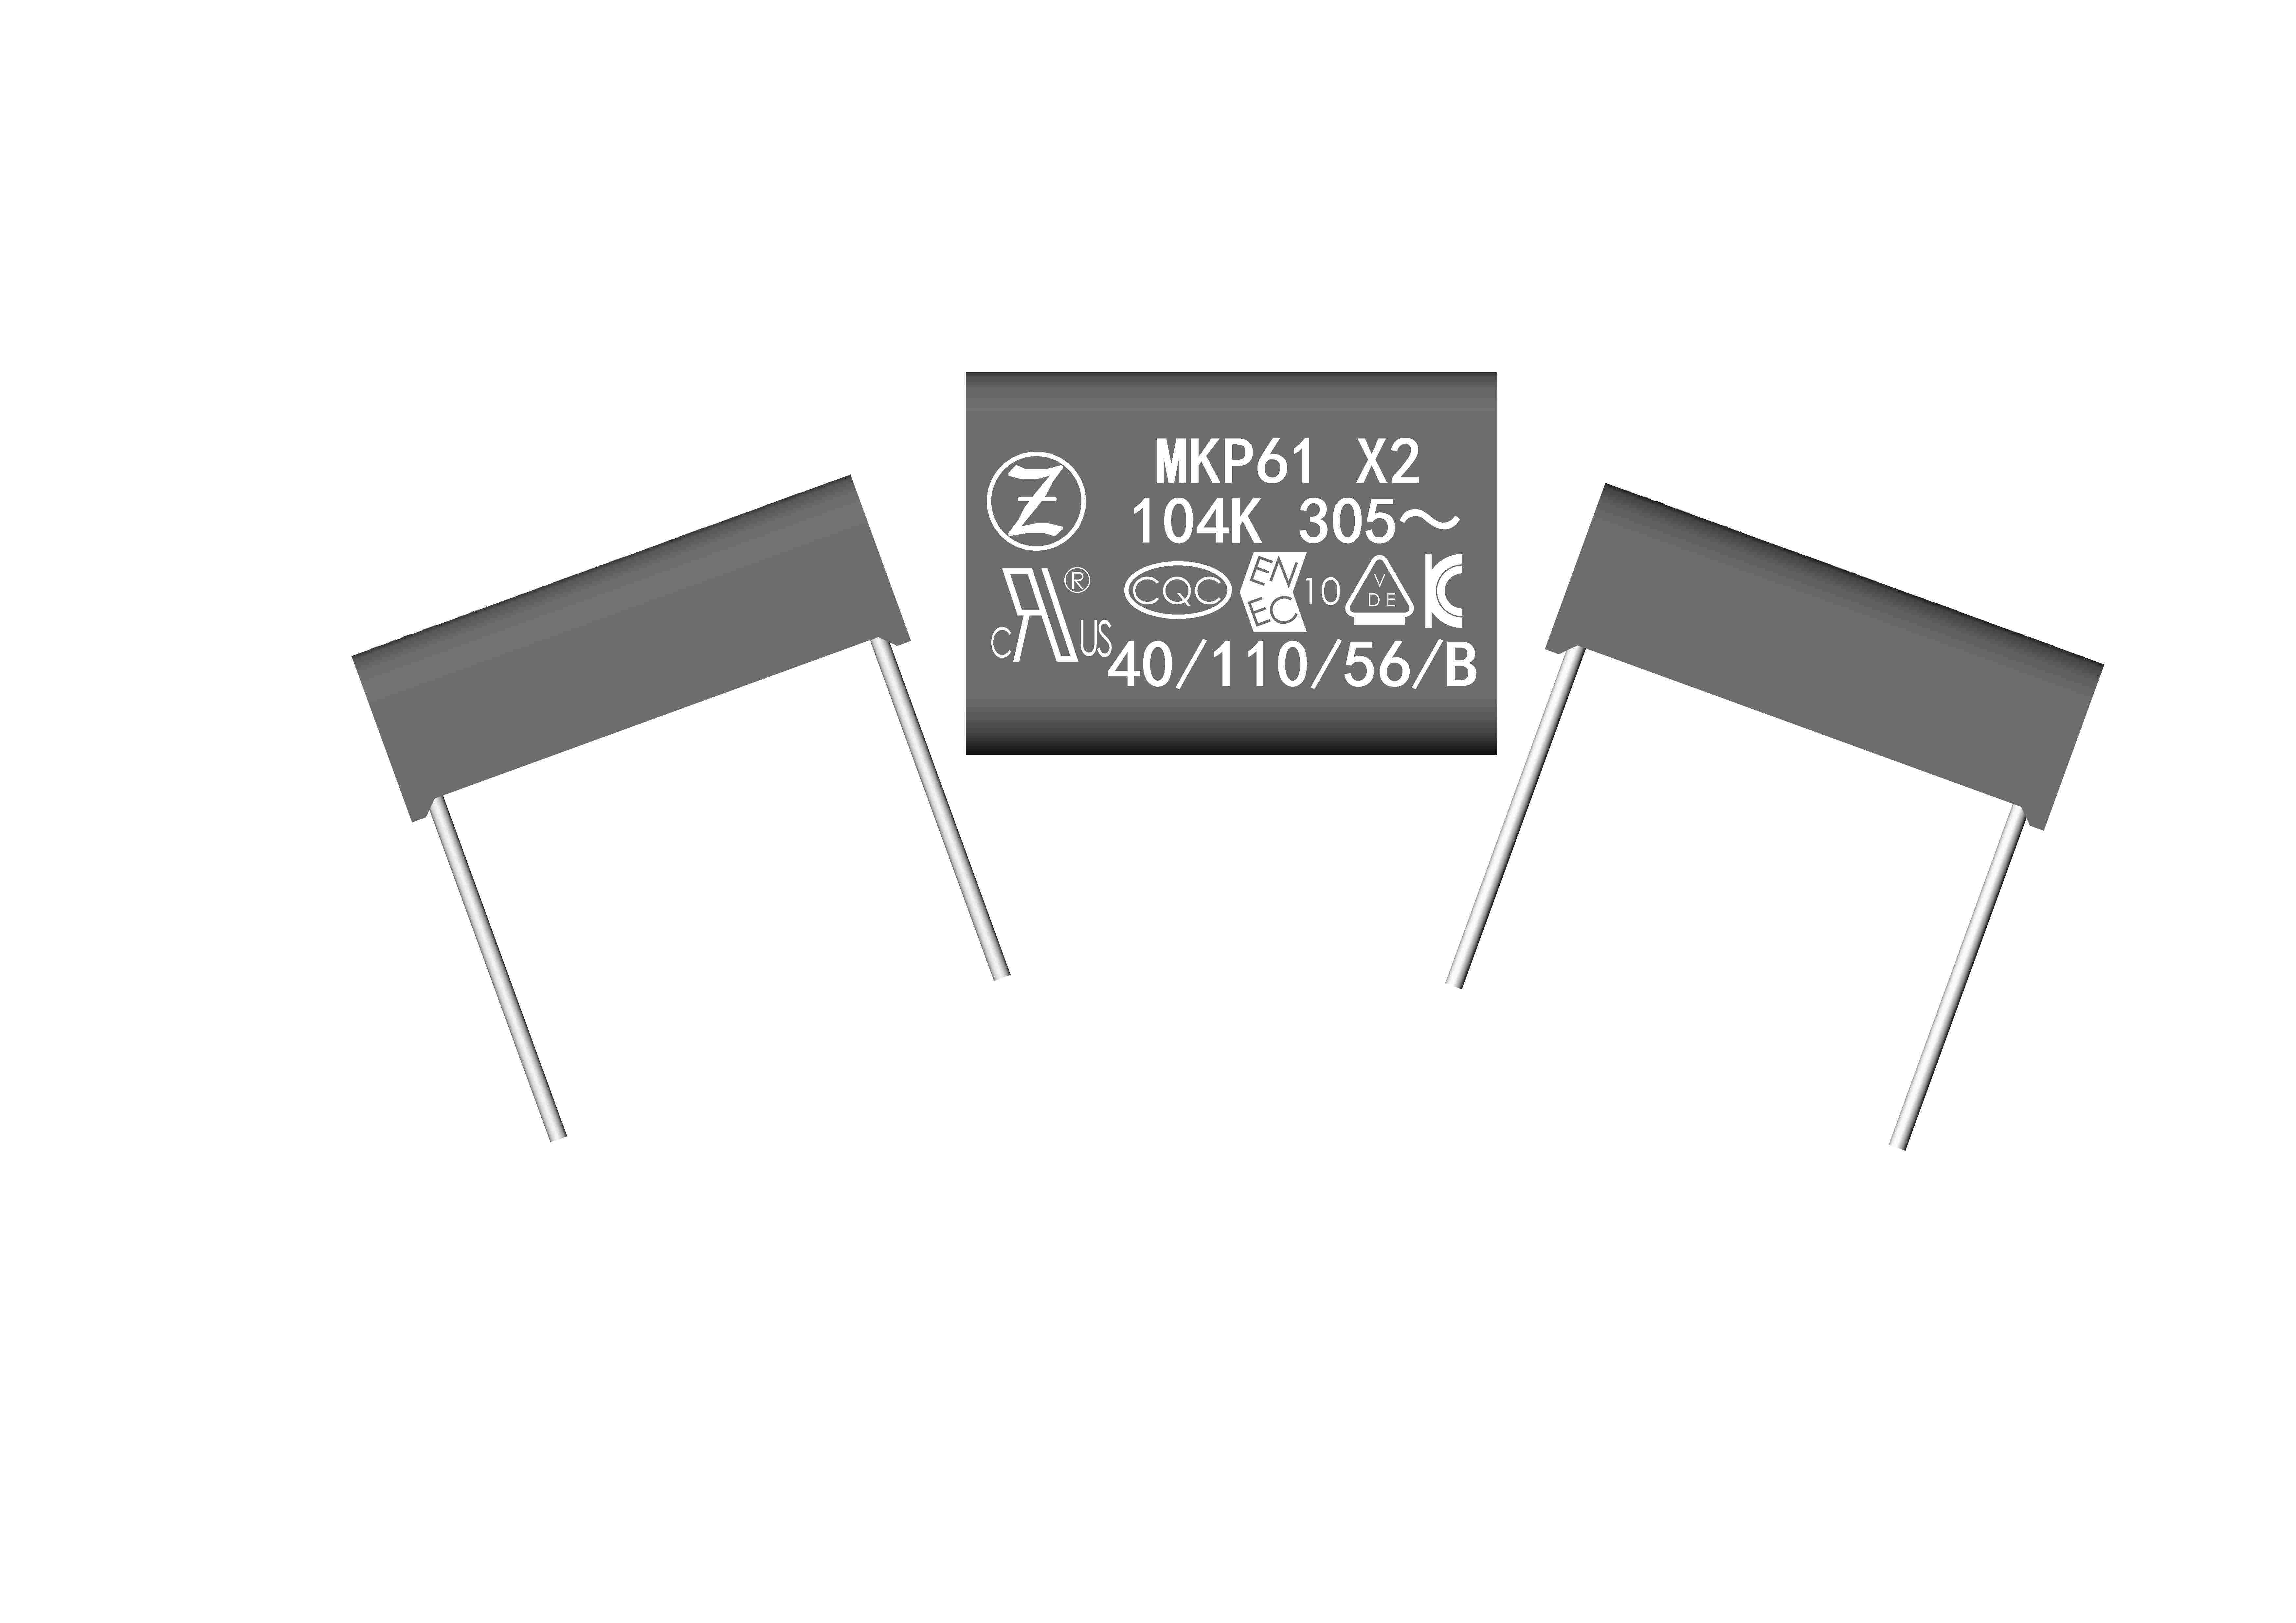 MKP61F_EMI suppression capacitor(Class X2,Flat version,275Vac,305Vac,310Vac)